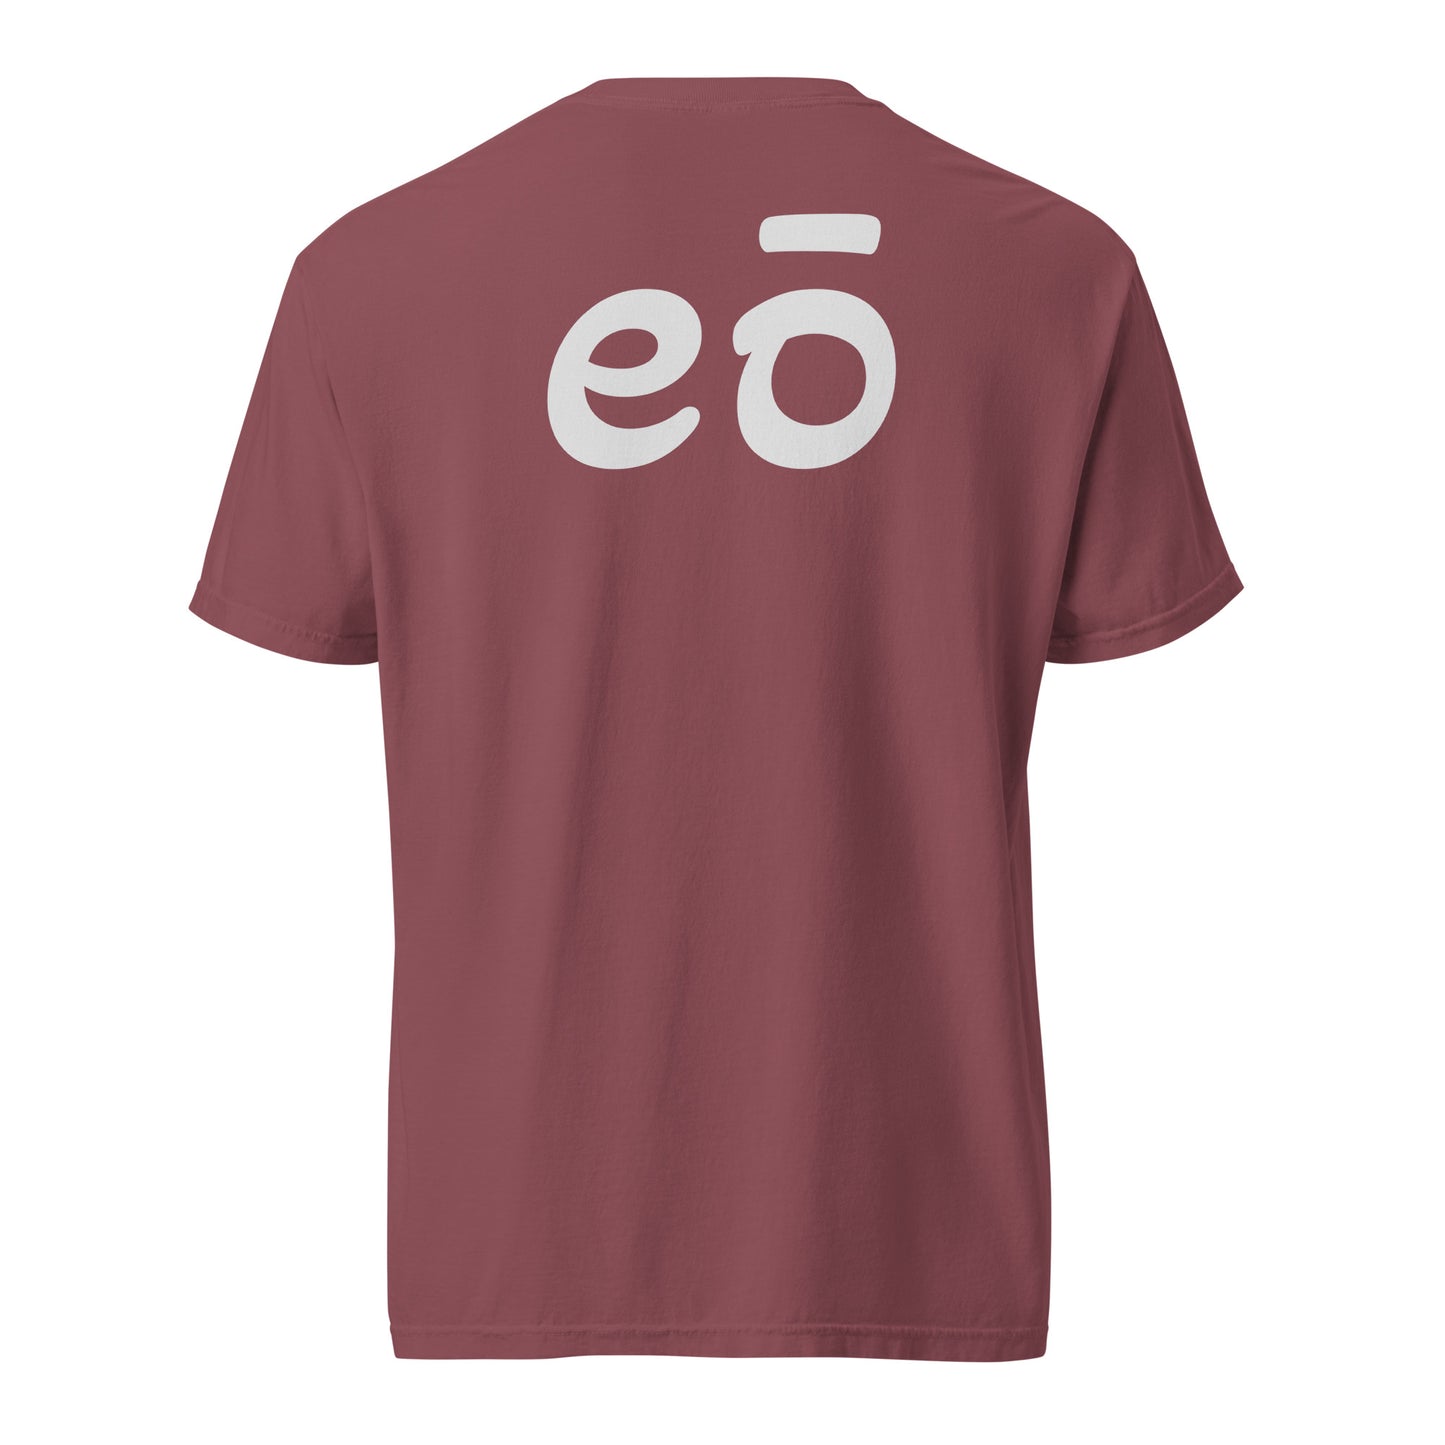 eō t-shirt